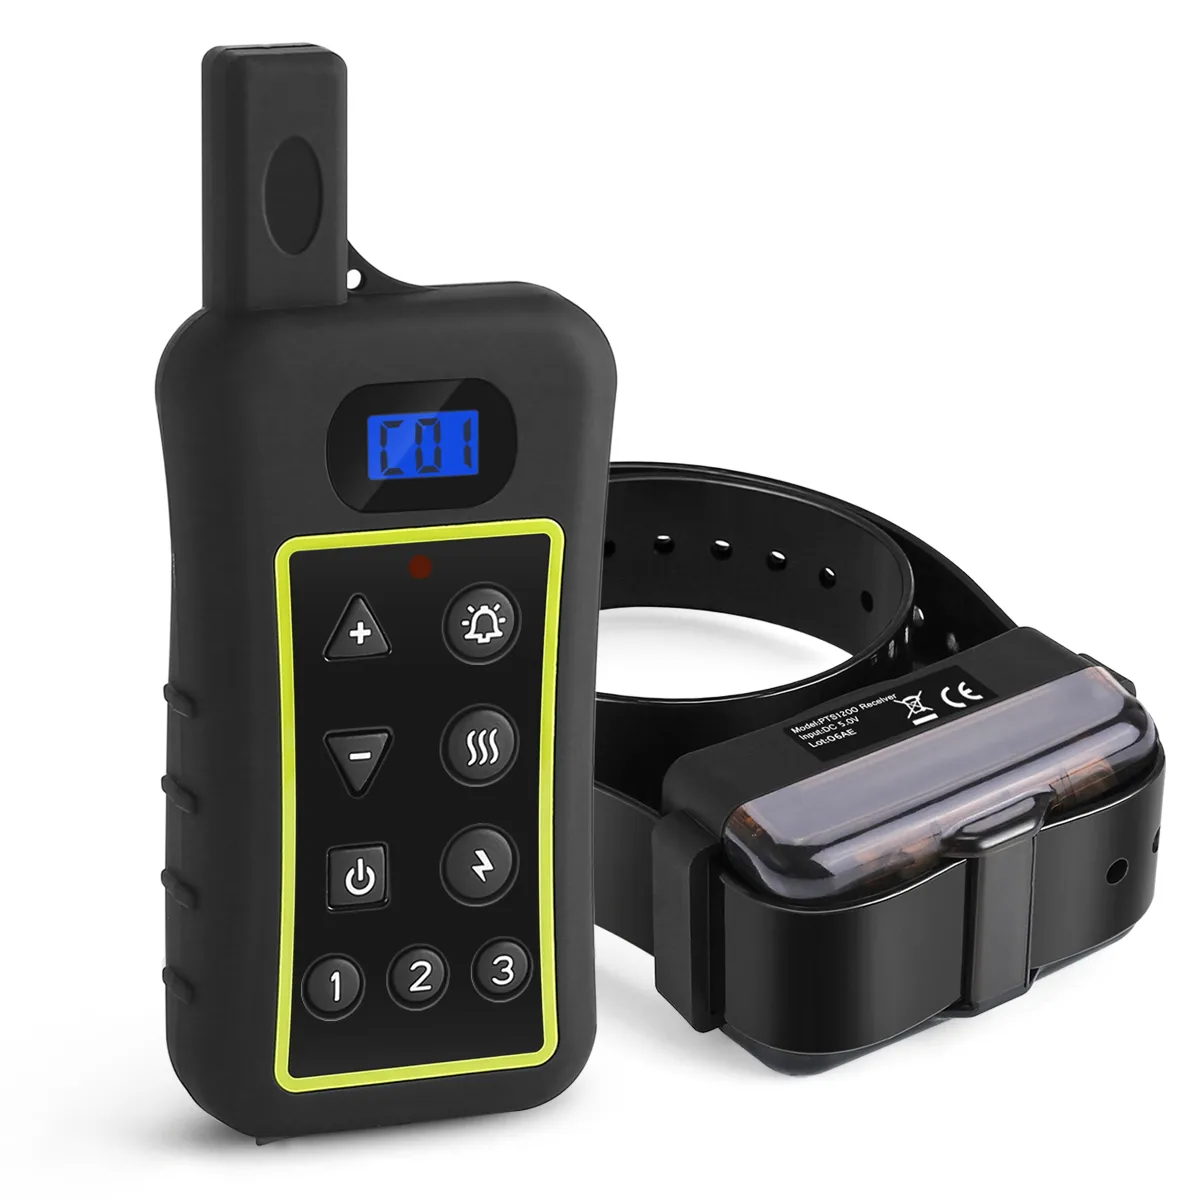 Trainertec-Collar de entrenamiento para perros pts1200 Dual, 2 en 1, con control remoto, descarga eléctrica, sin ladridos, con luz led